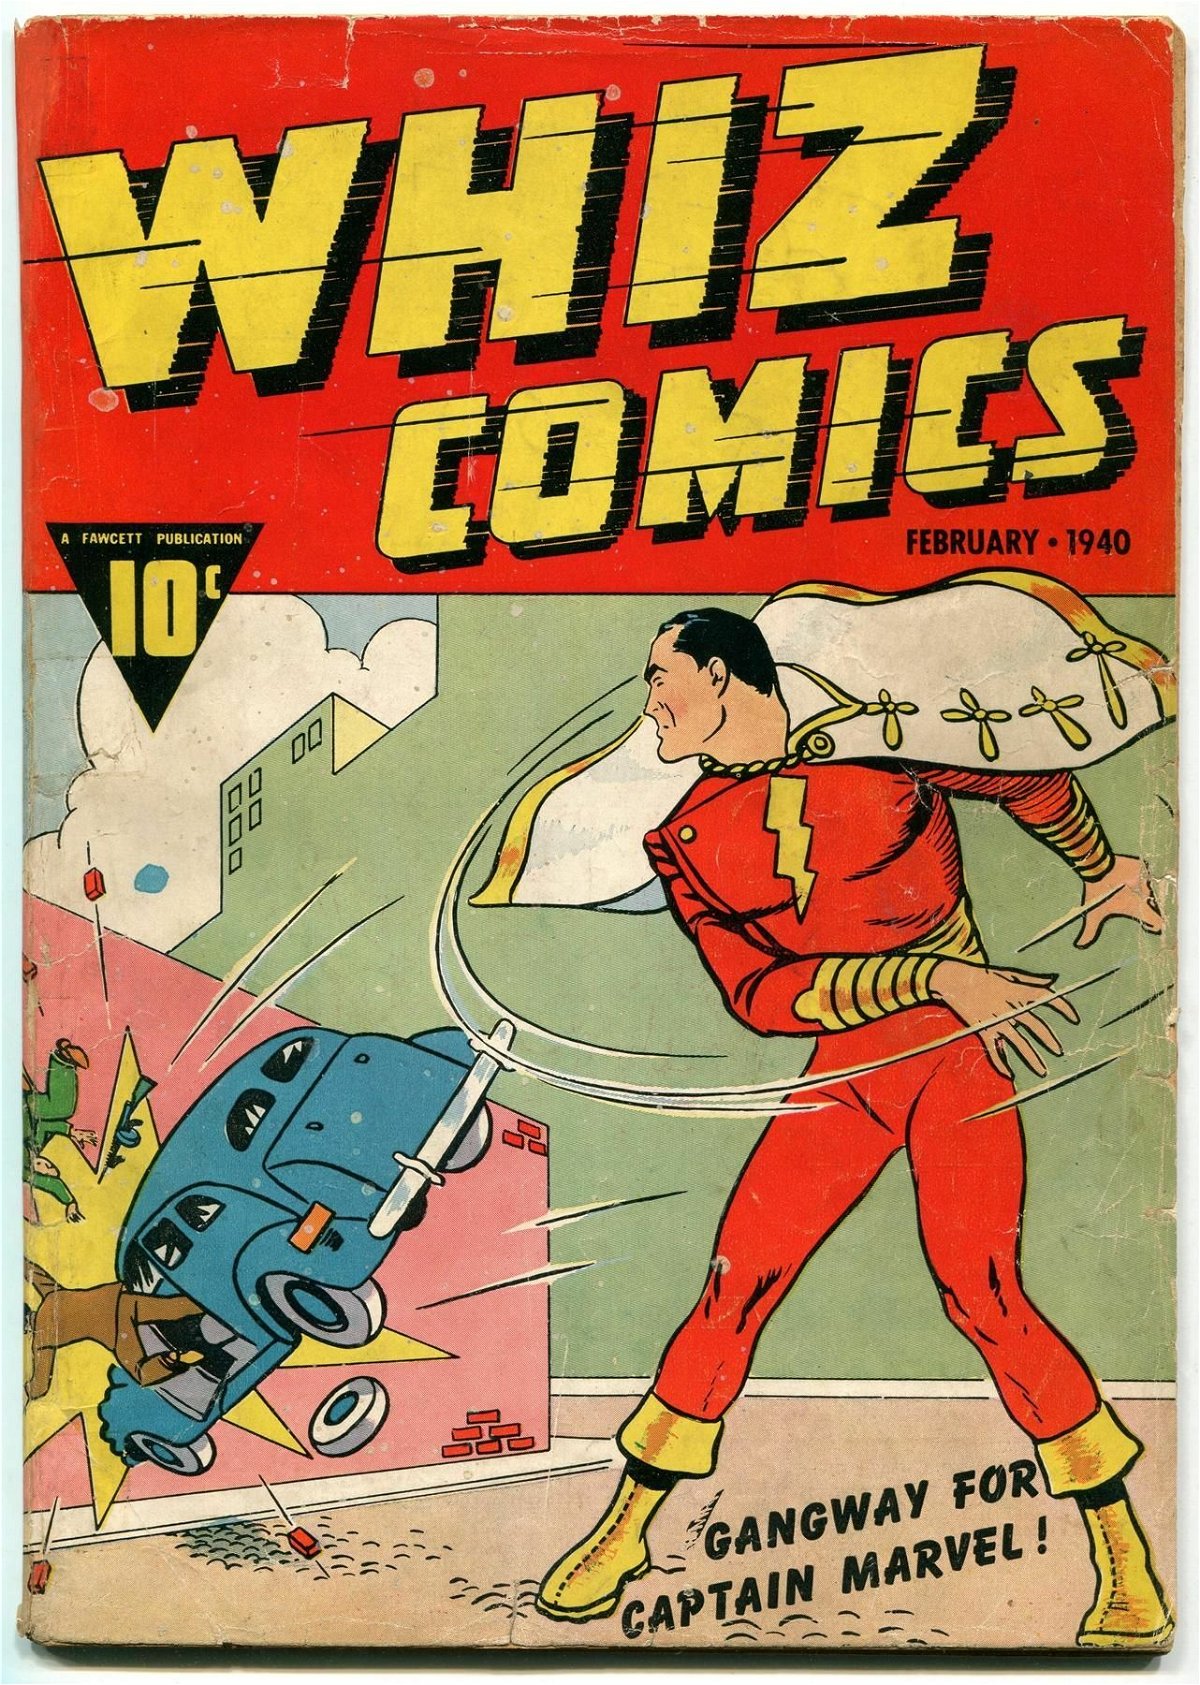 Copertina del #2 di Whiz comics, datata Febbraio 1940